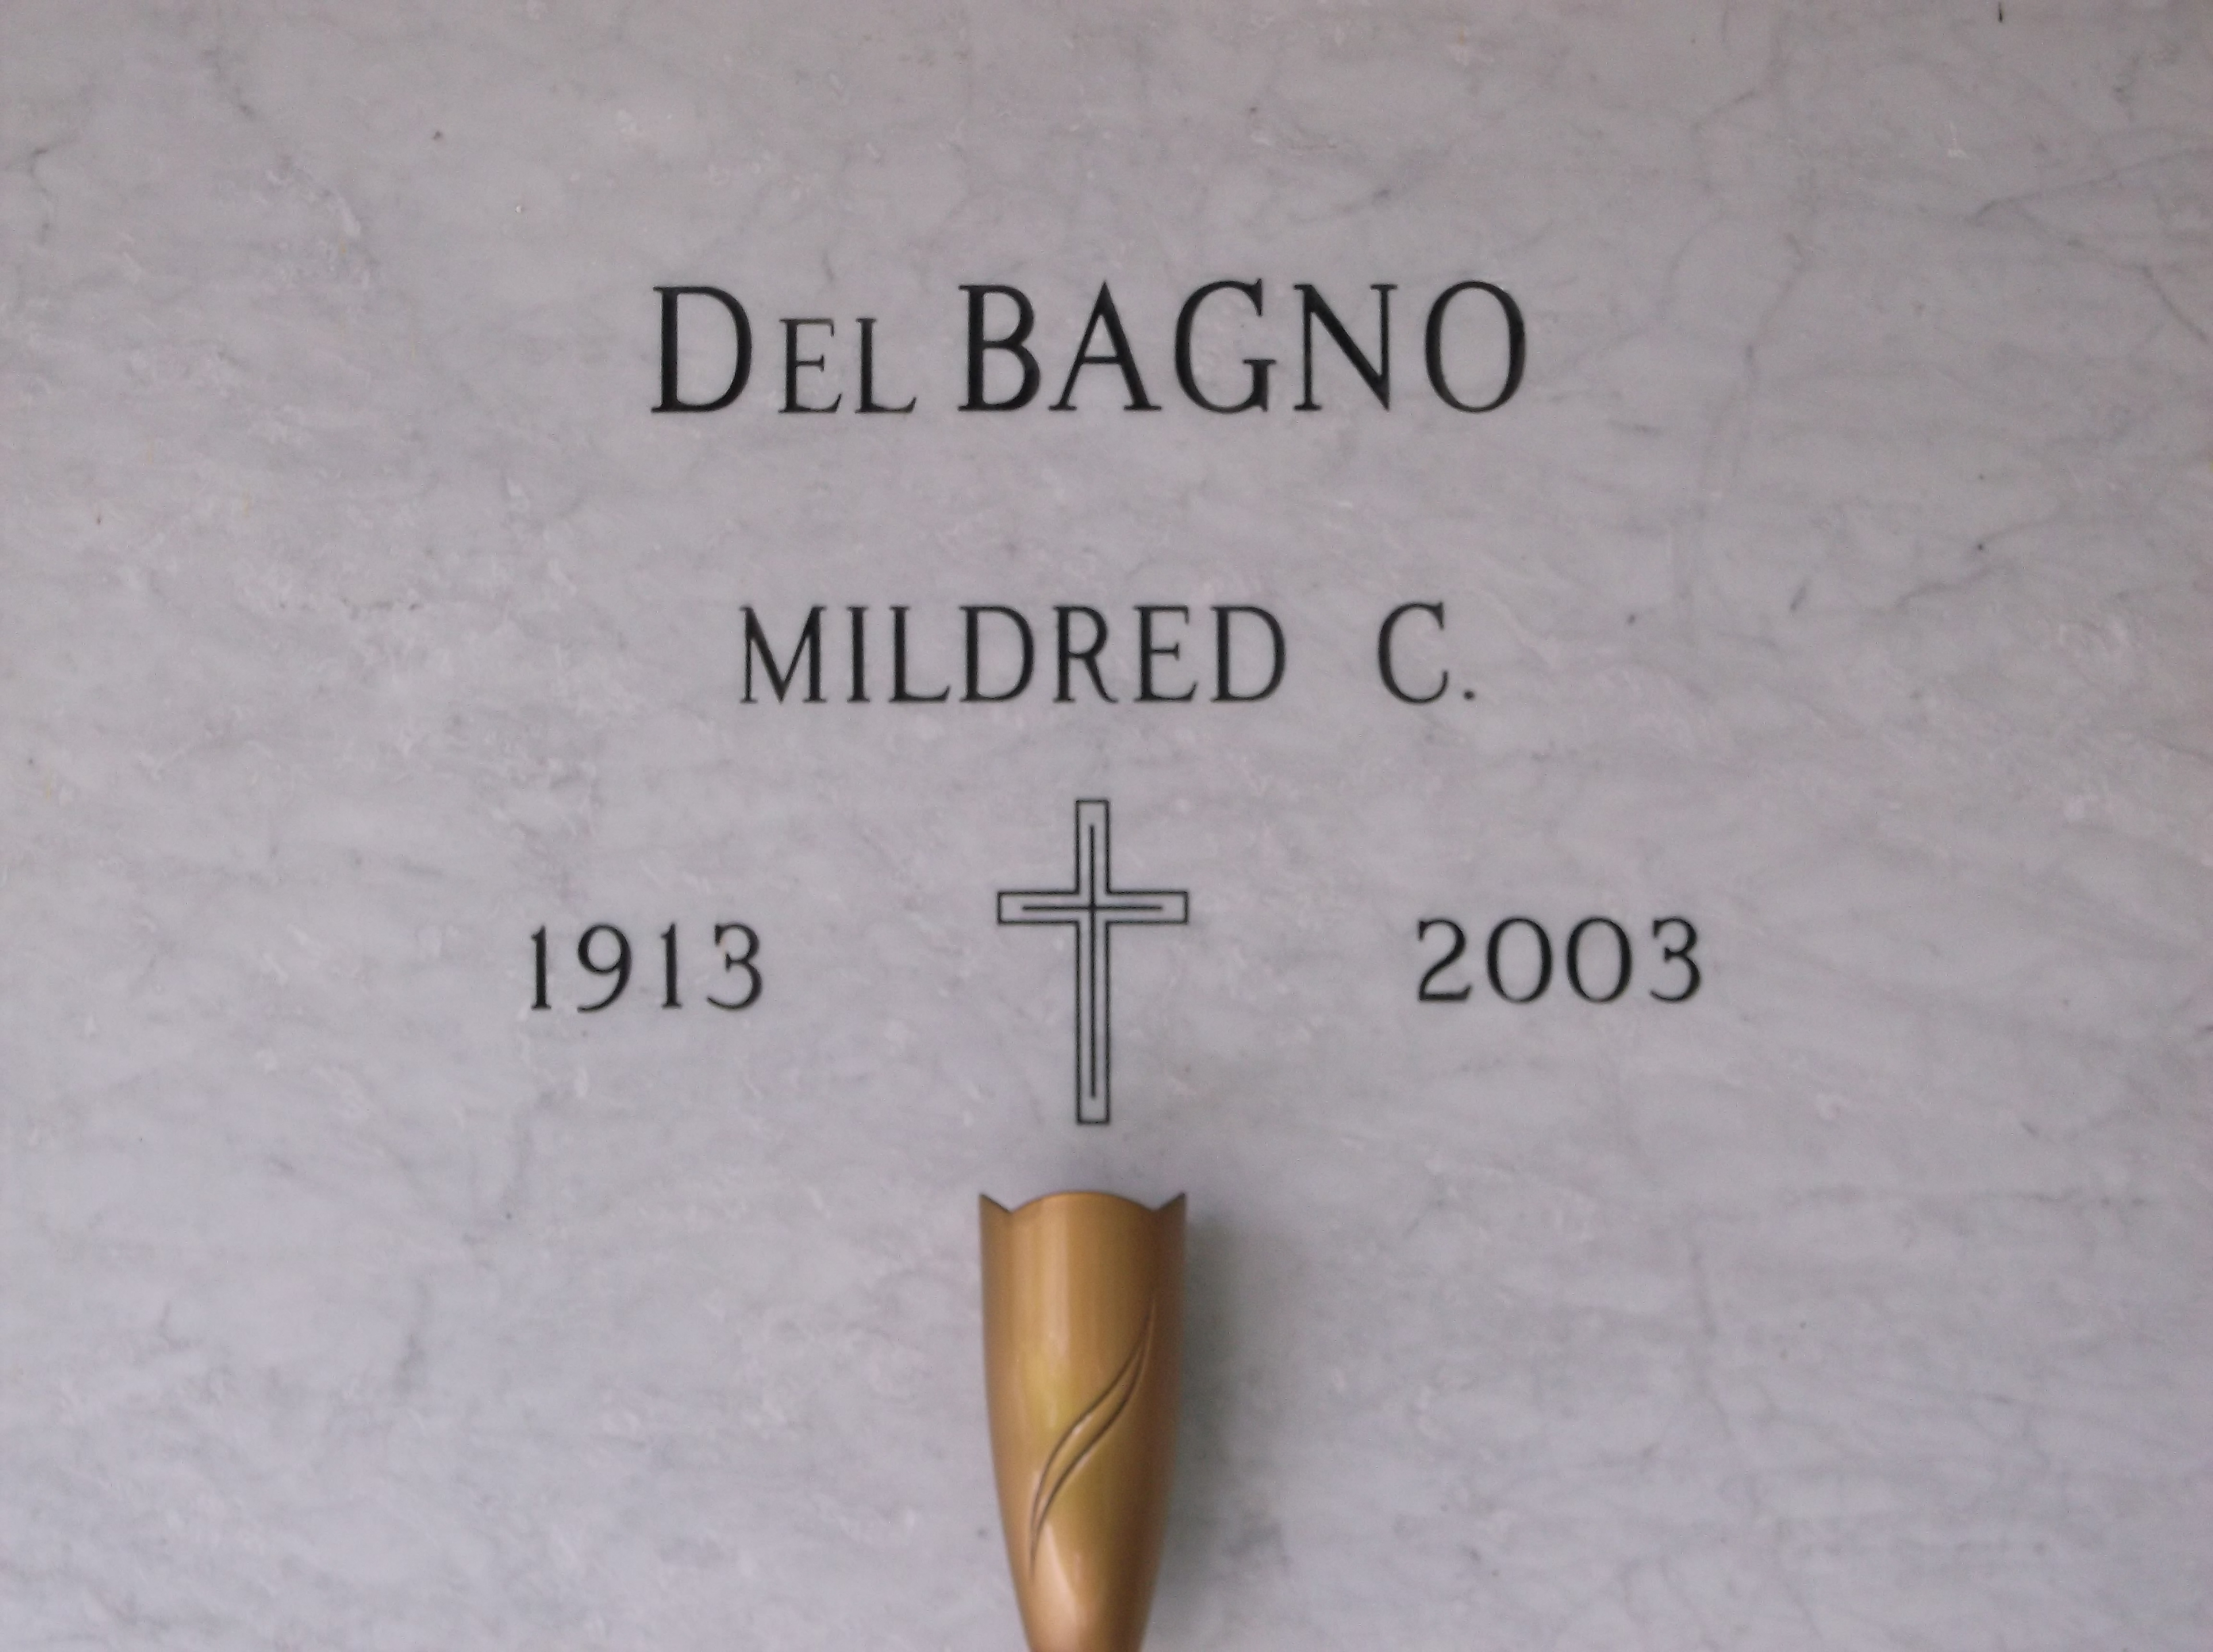 Mildred C Del Bagno